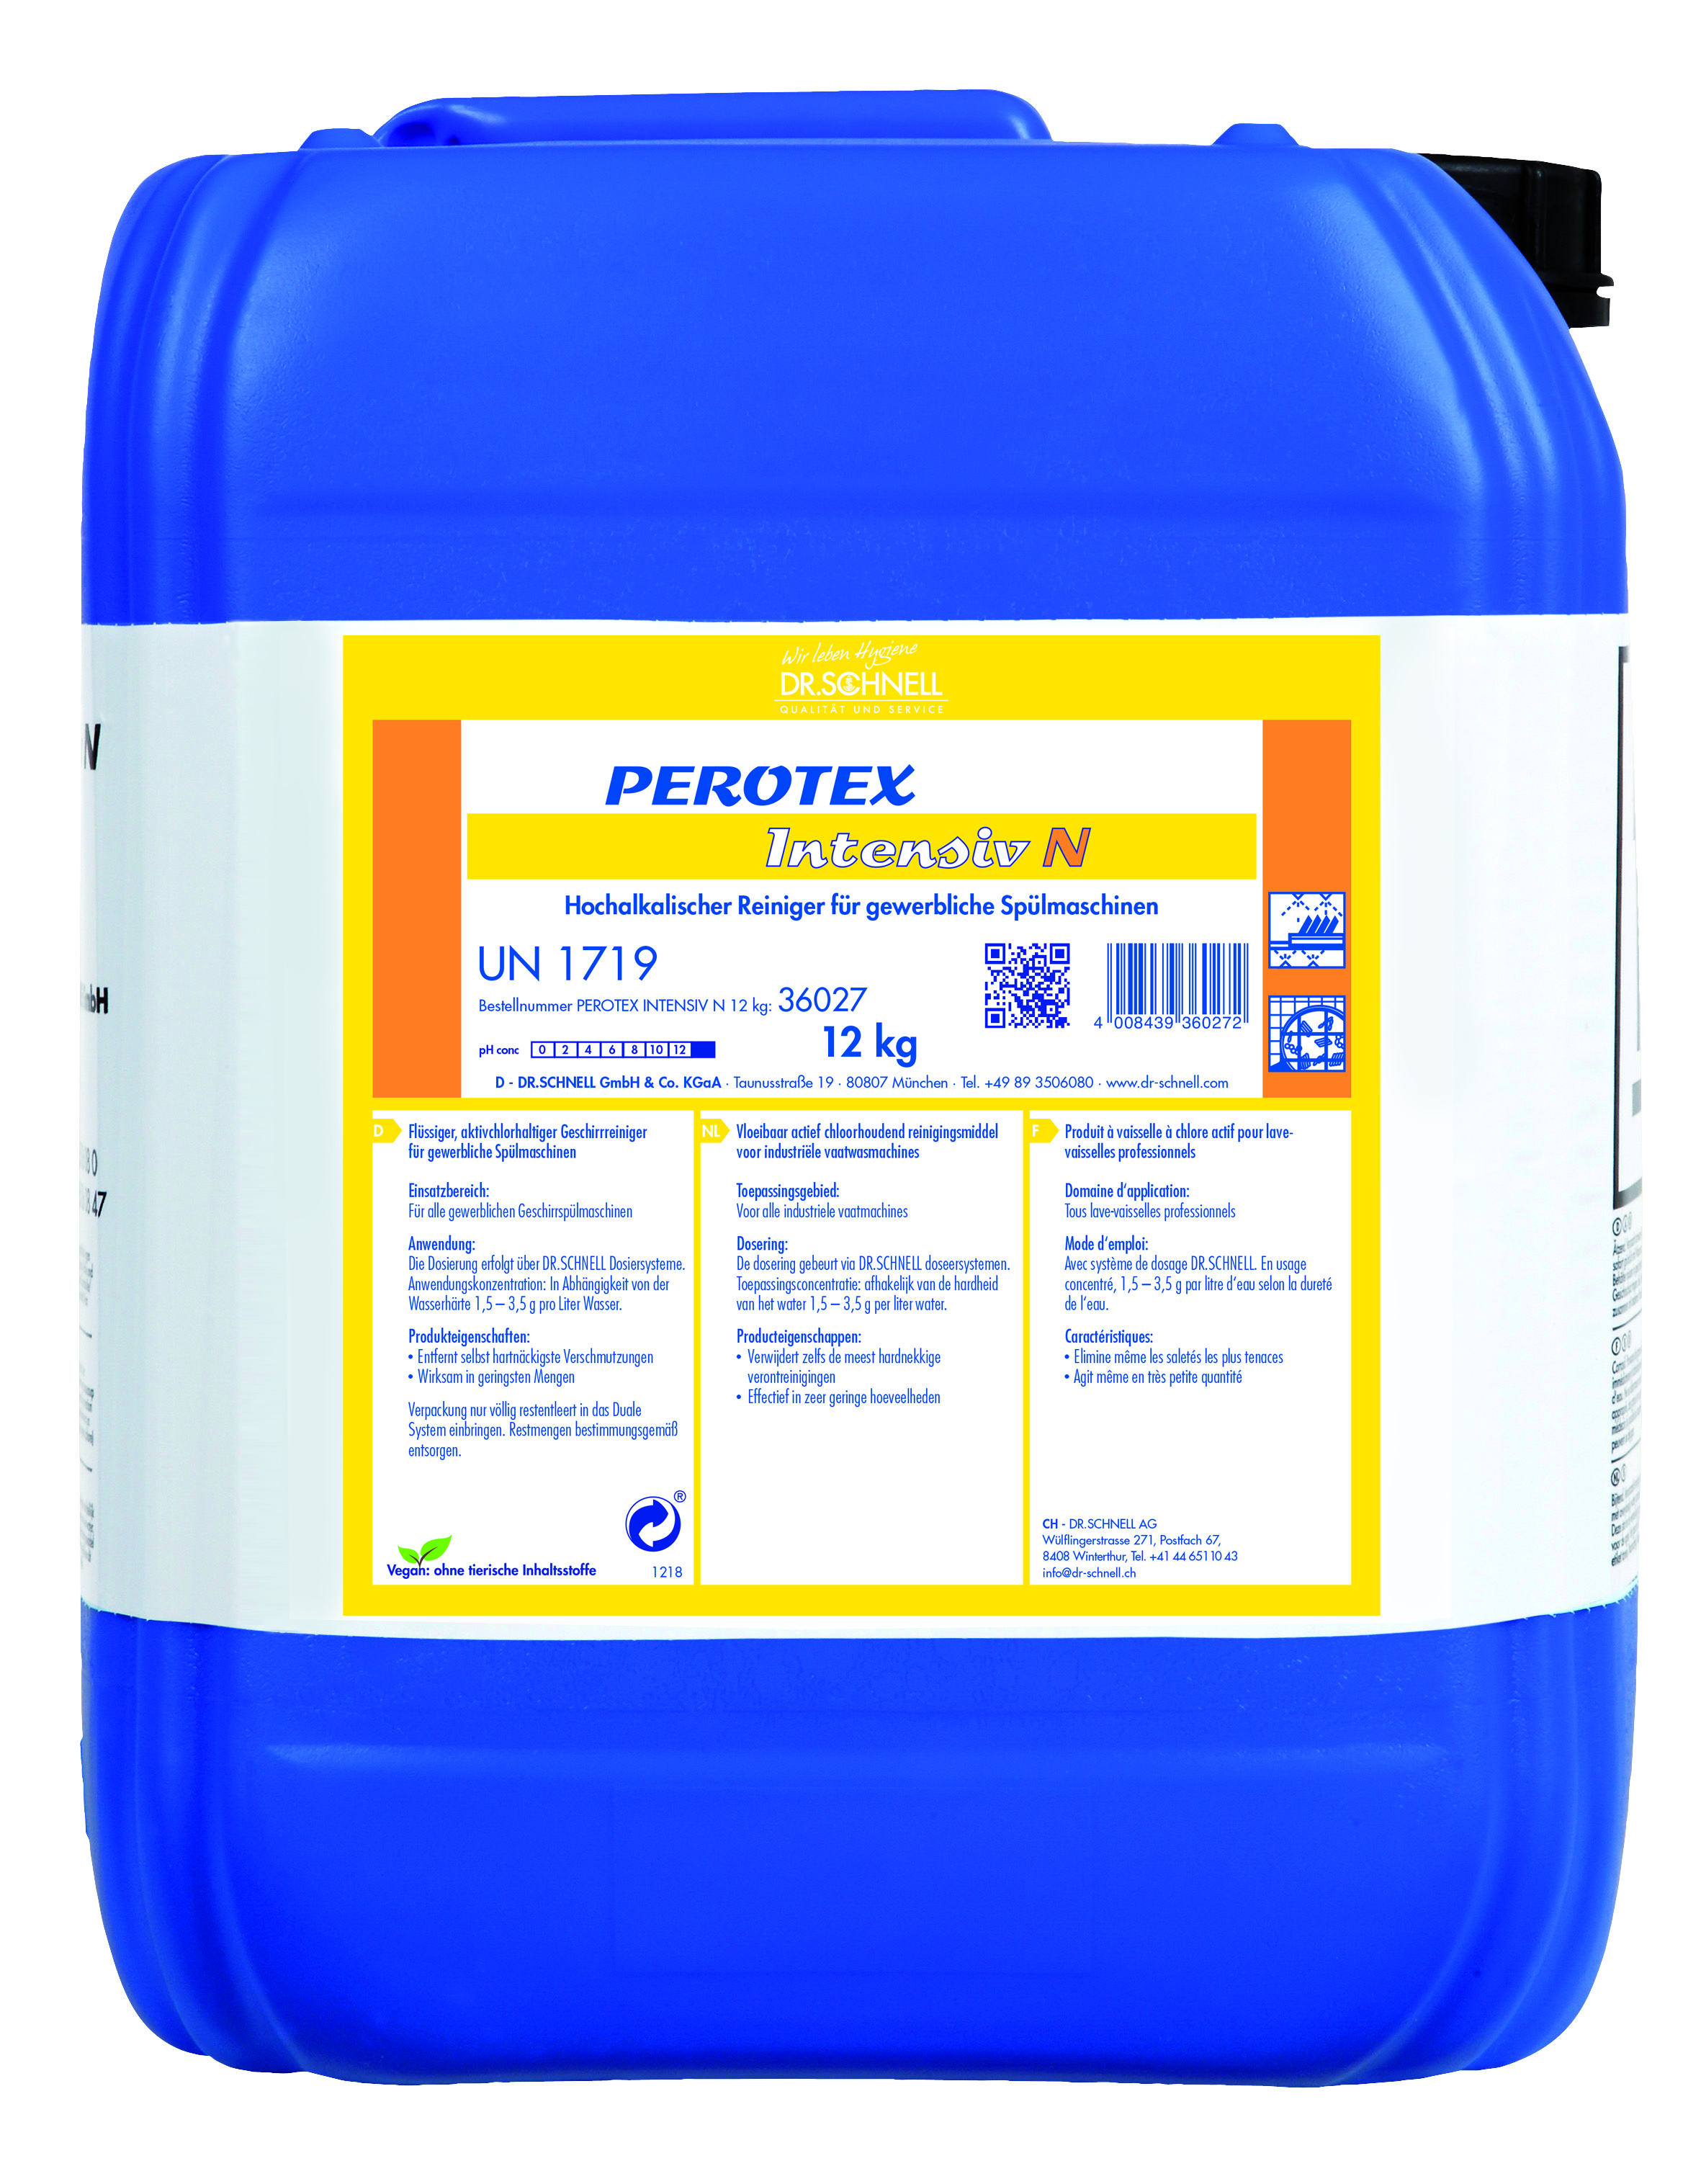 PEROTEX intensiv N 12 kg Geschirr-,spülreiniger